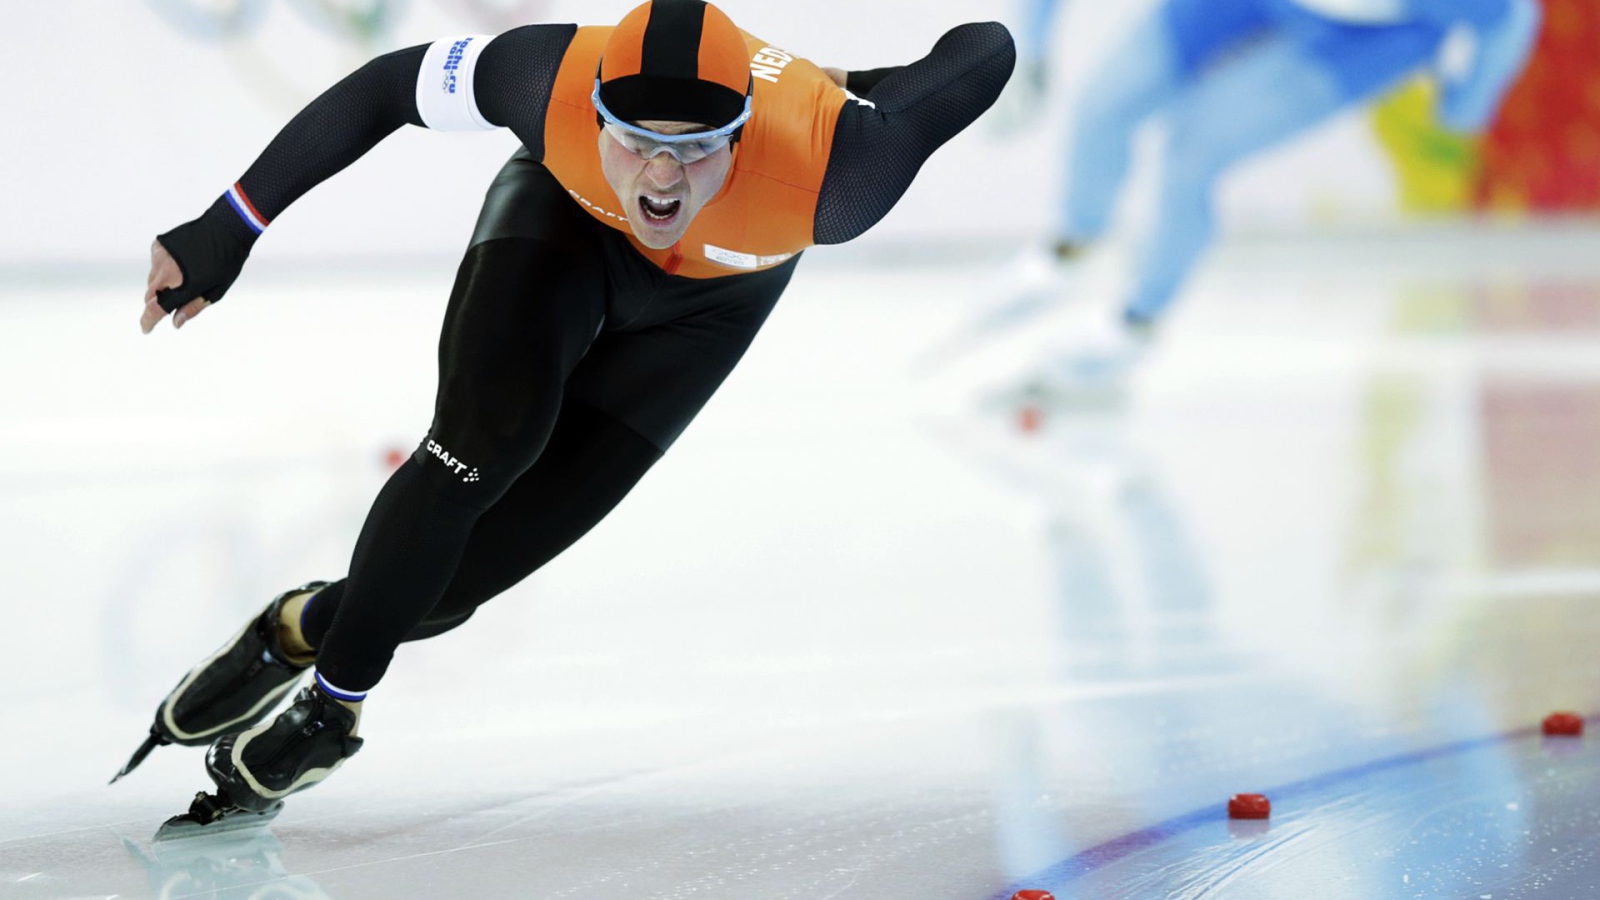 Обладатель серебряной медали в дисциплине скоростной бег на коньках Ян Смеекенс из Нидерландов